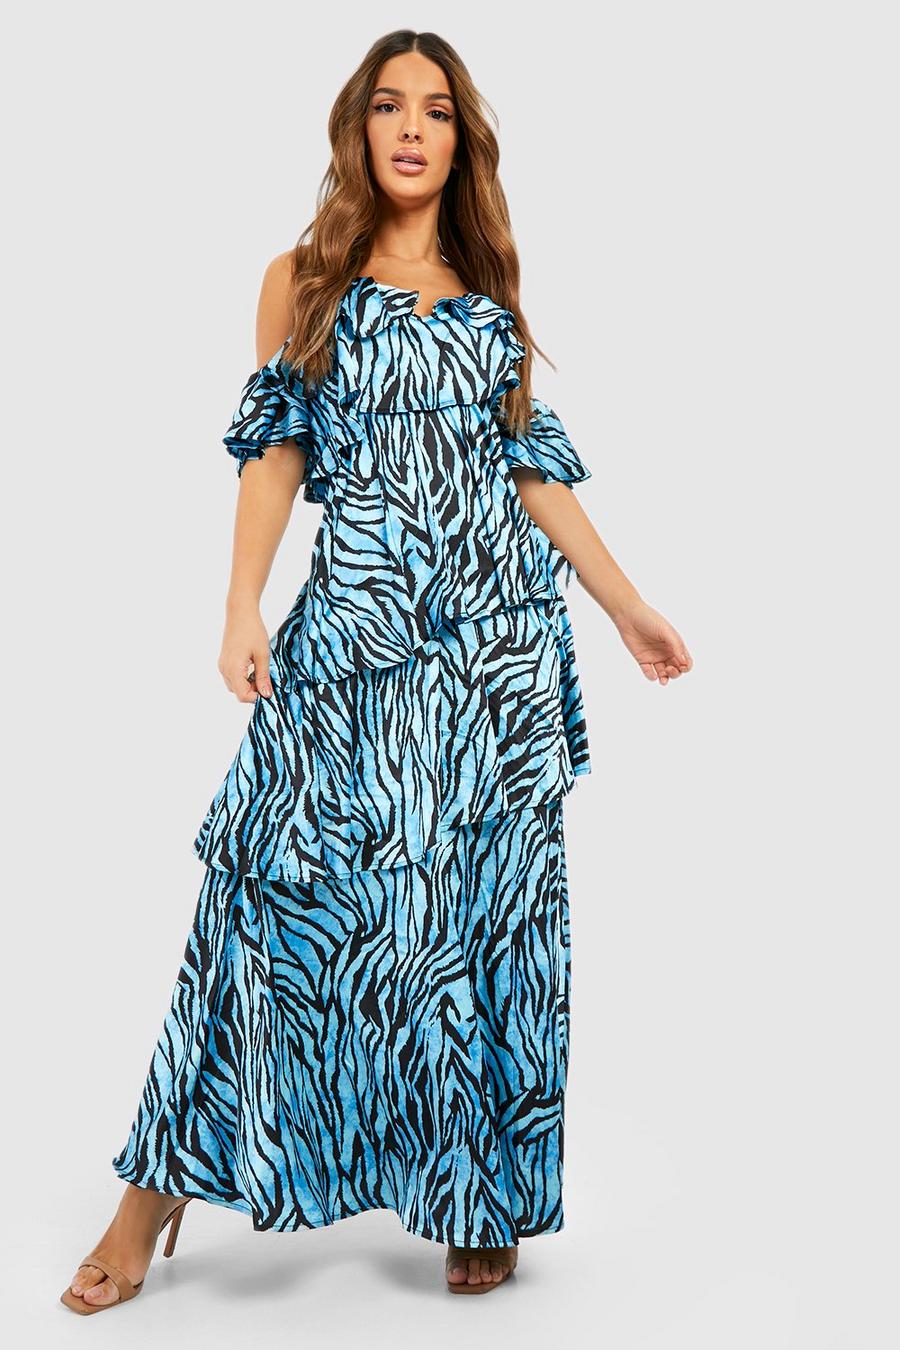 Blue Zebra Print Ruffle Tiered Maxi Dress